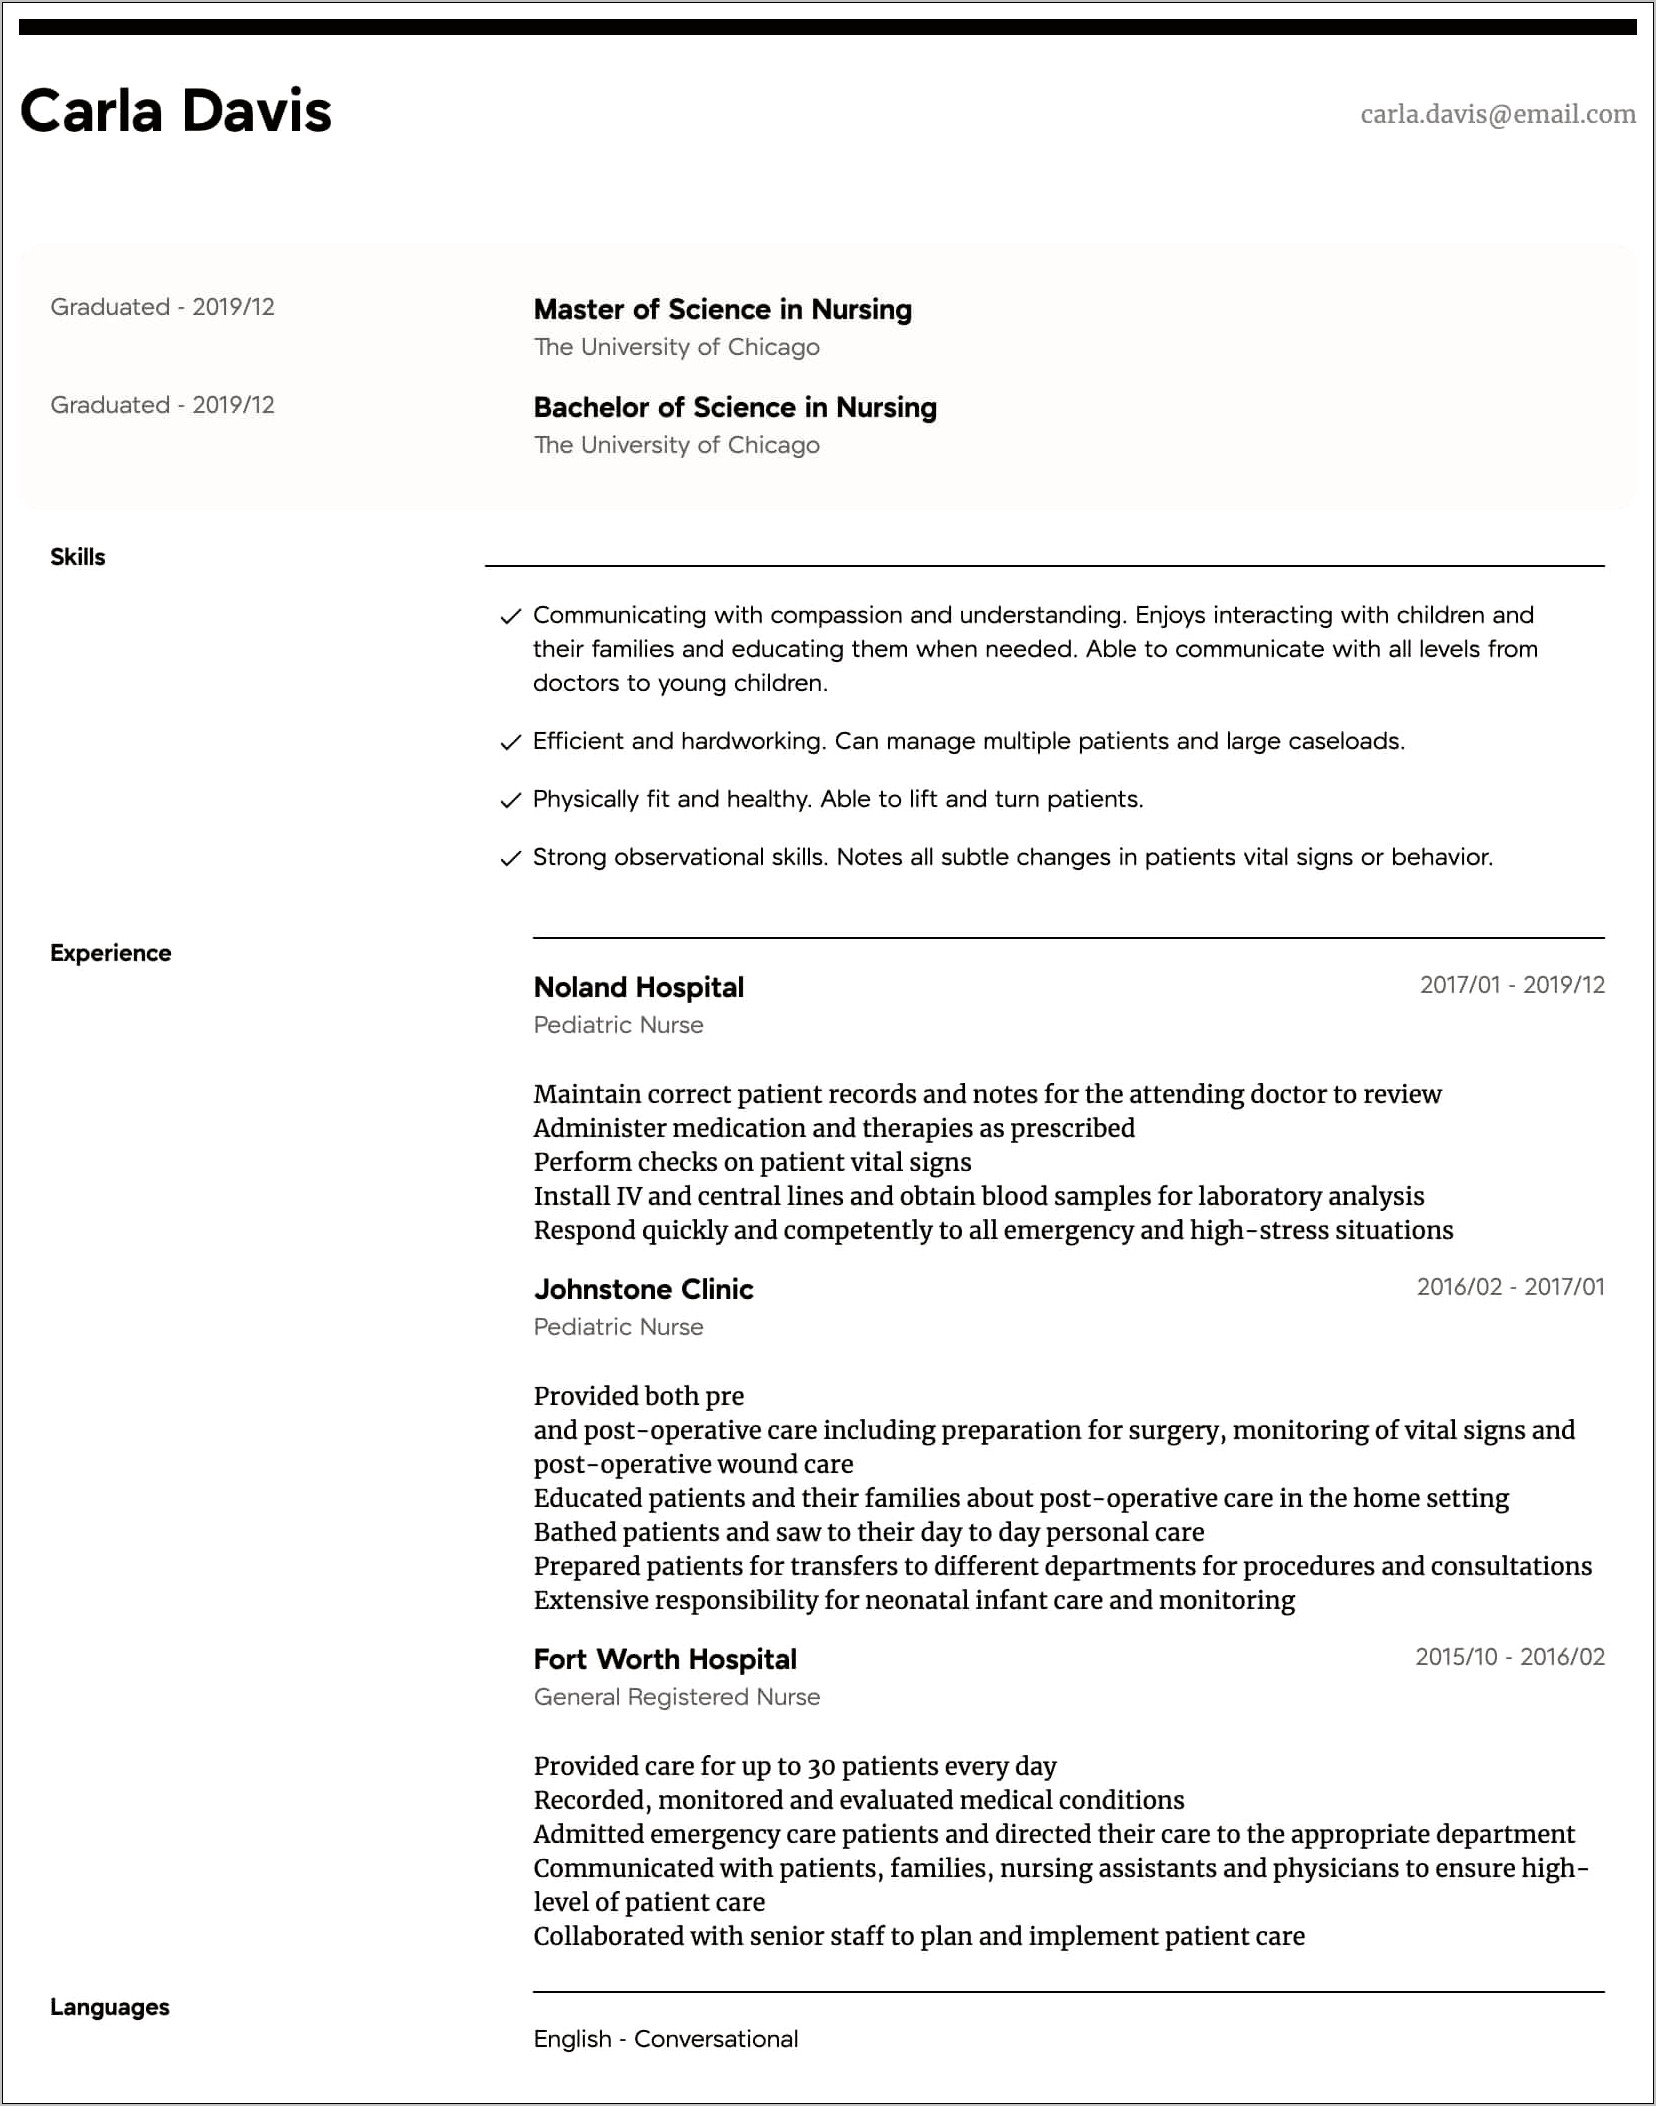 Resume Description Bullets For Emergency Room Nurse